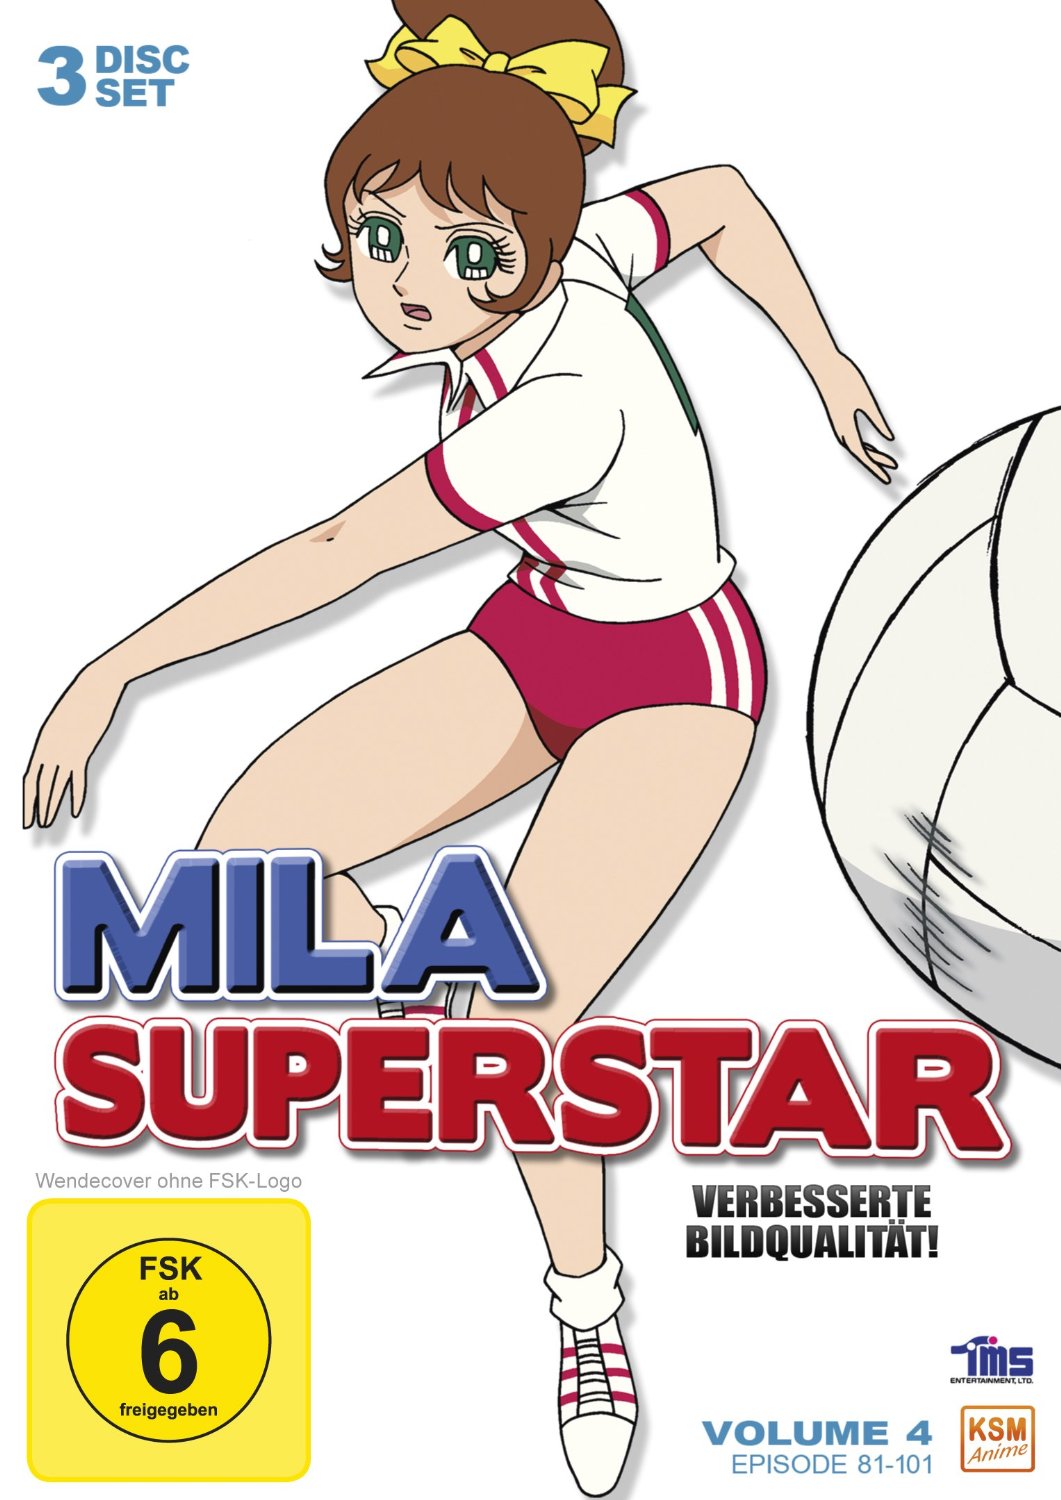 Mila Superstar - Volume 4: Episode 81-101 [DVD]